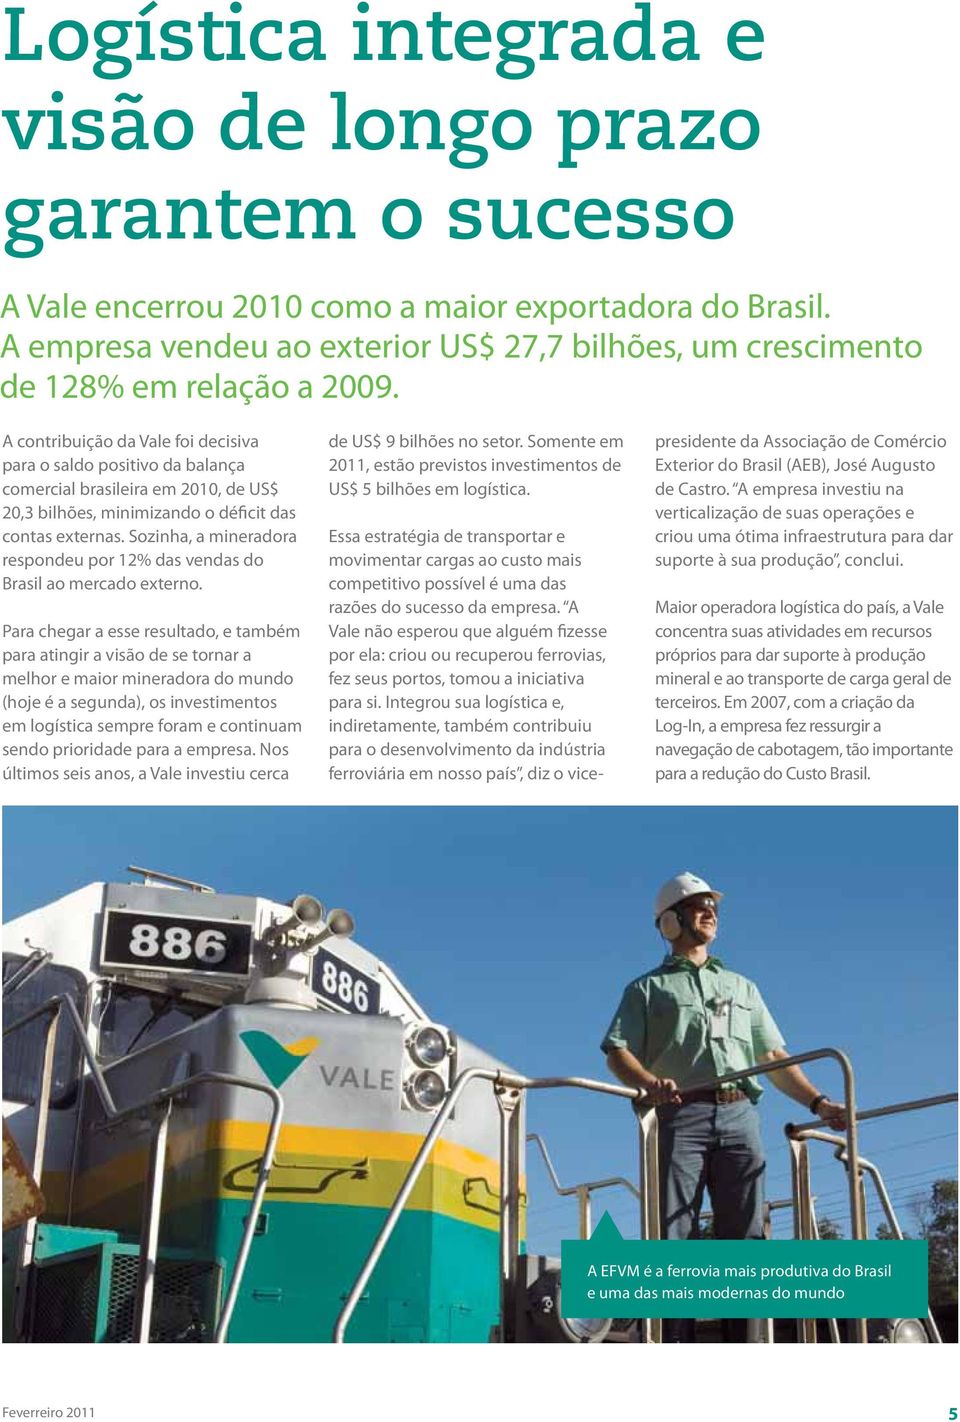 A contribuição da Vale foi decisiva para o saldo positivo da balança comercial brasileira em 2010, de US$ 20,3 bilhões, minimizando o déficit das contas externas.